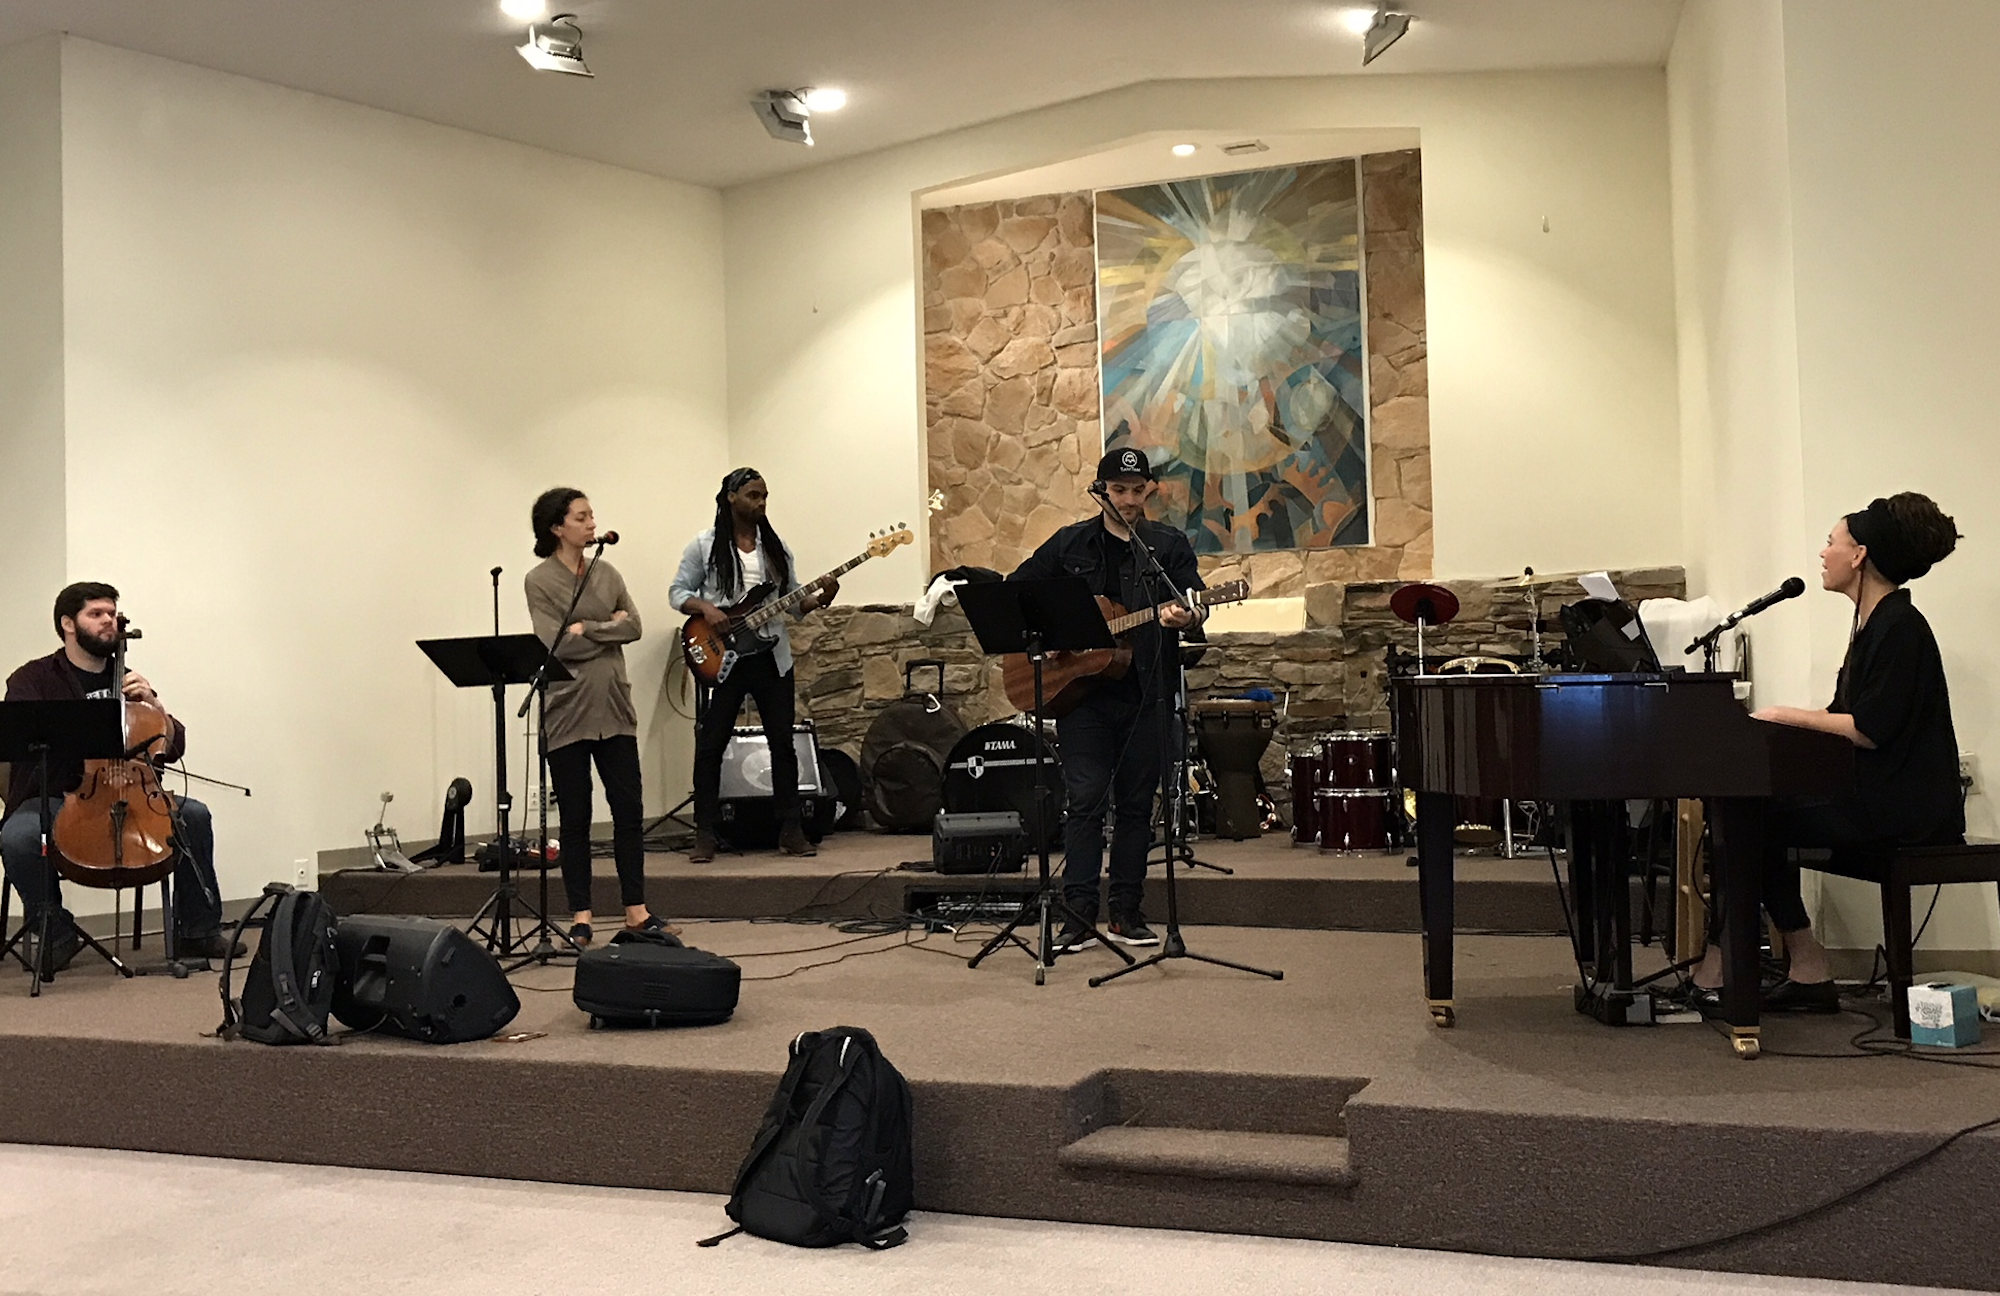 Worship Set Led By Misty Edwards – October 2017